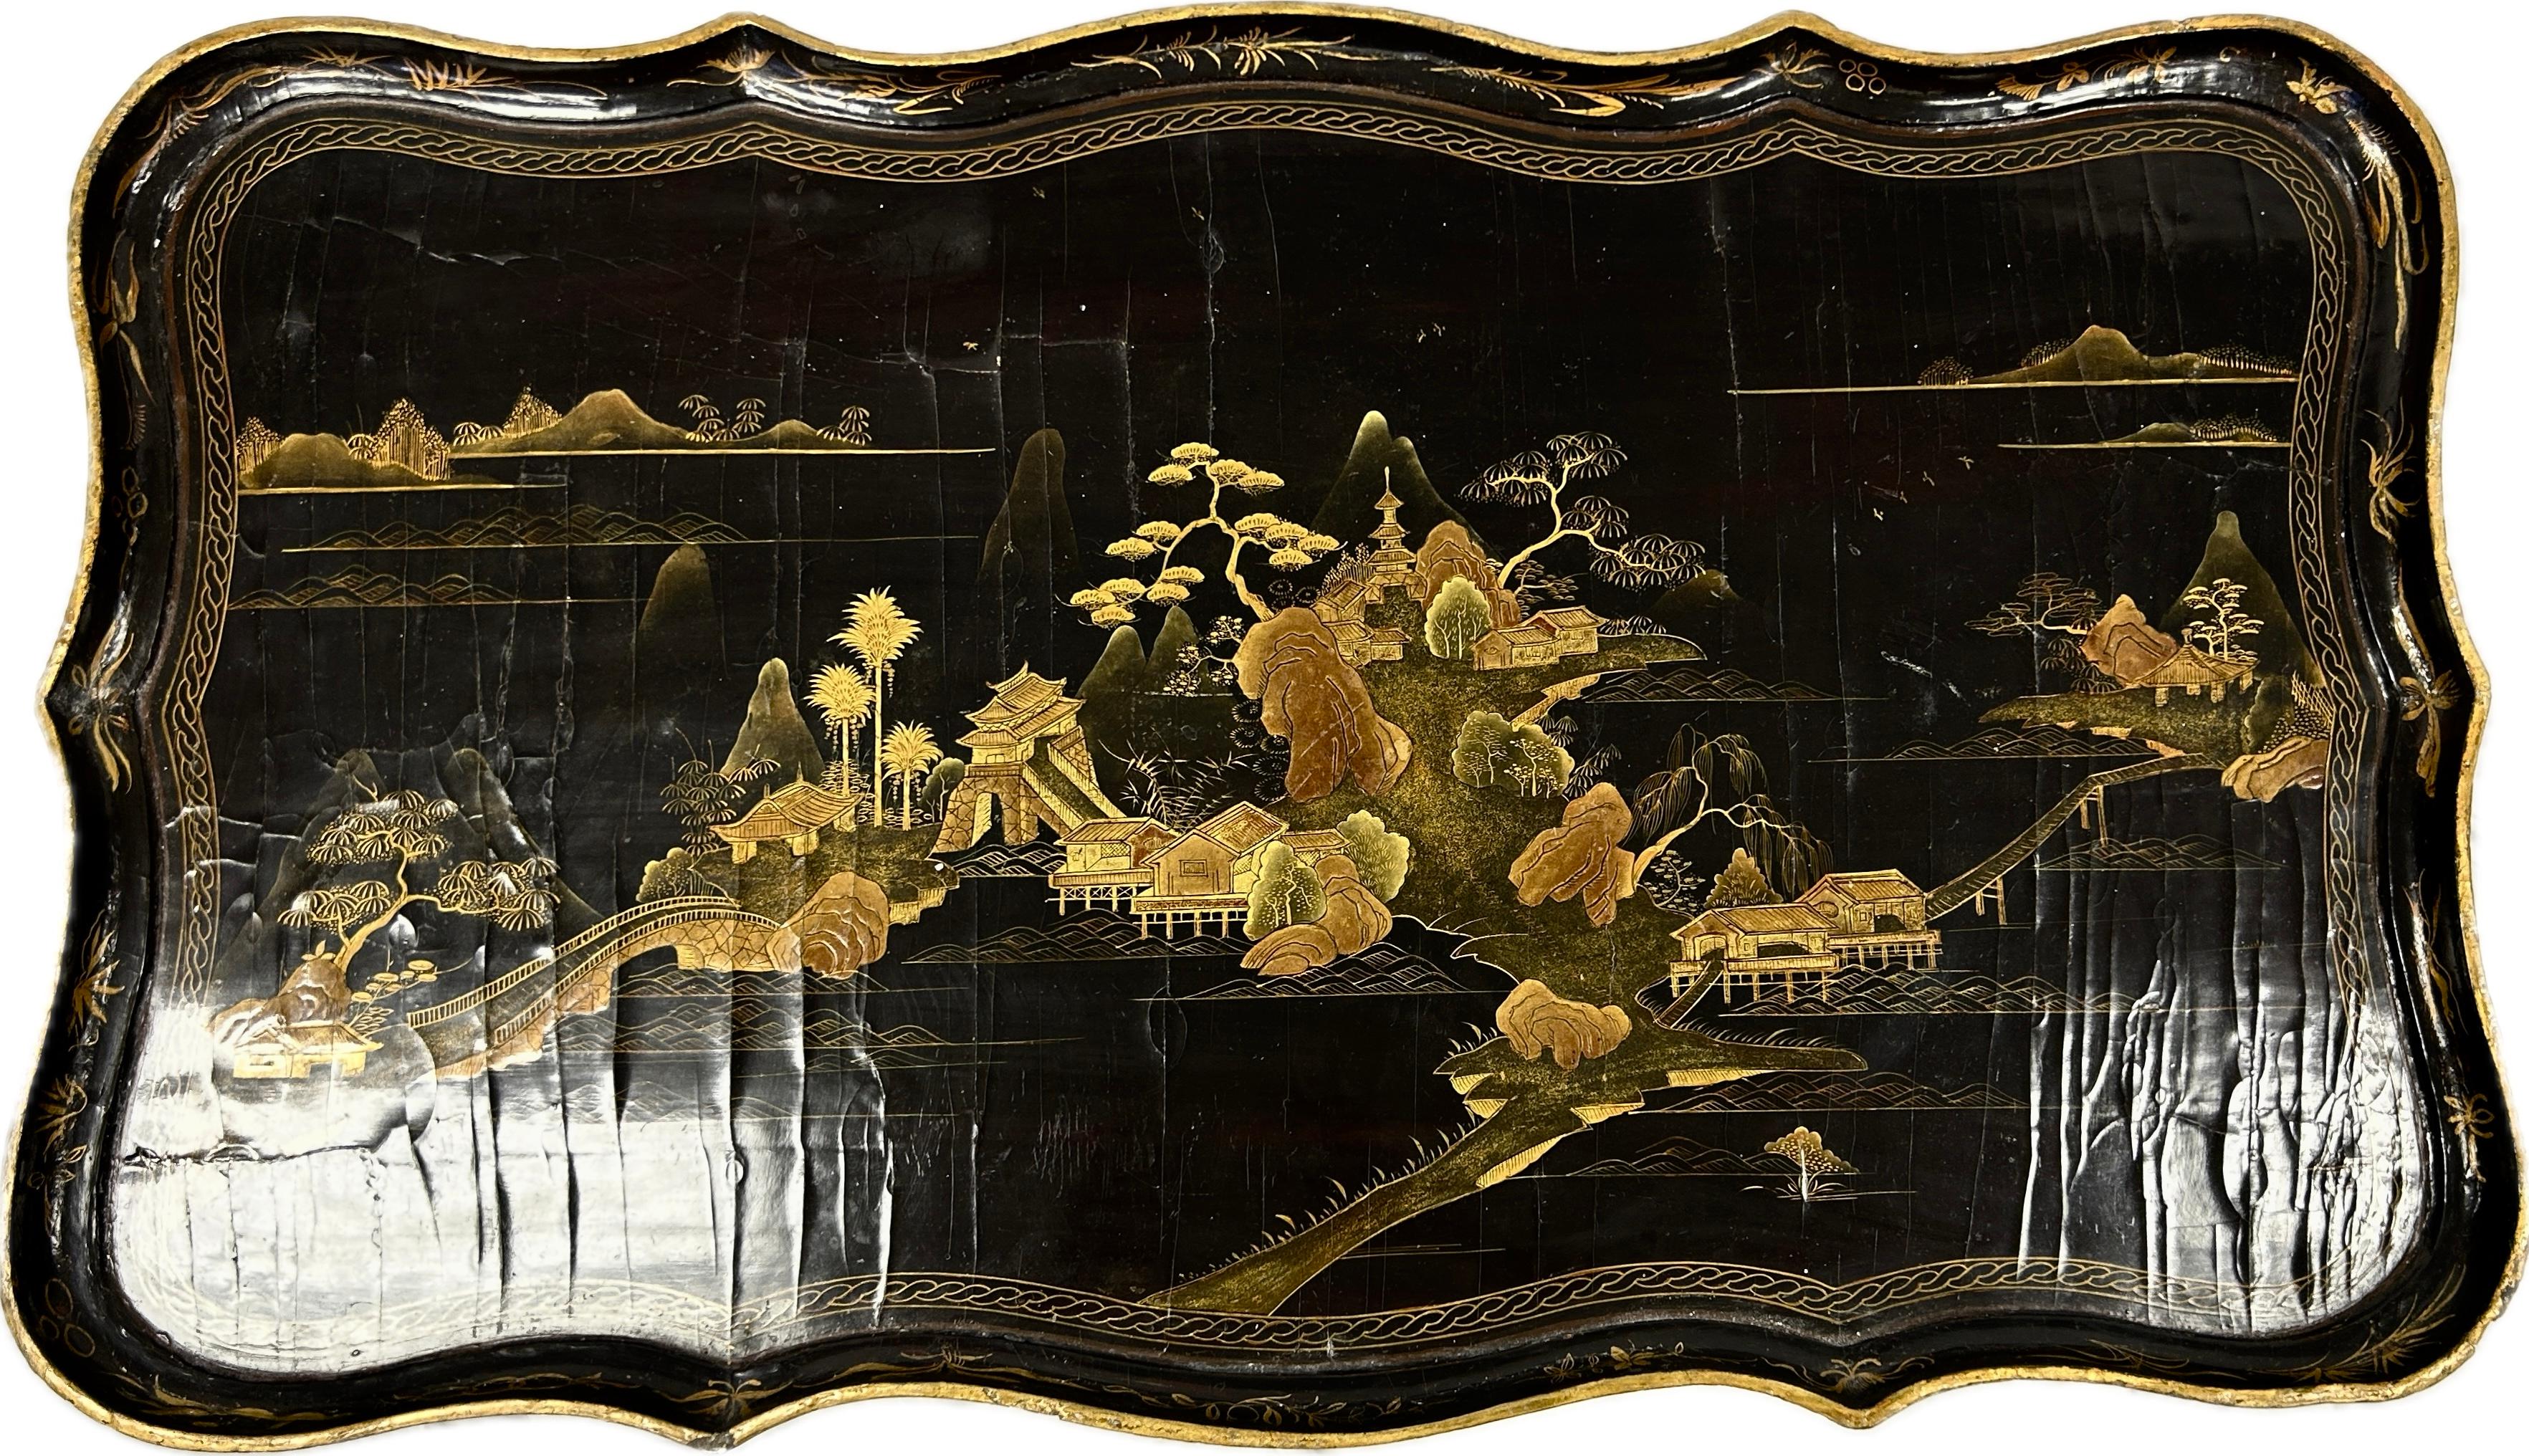 Table laquée Chinoiserie anglaise du 19ème siècle. La table a un tiroir. Paysage chinois peint à la main dans de riches couleurs d'or, de vert mousse et de brun sur fond noir. Les pieds incurvés sont en bois laqué noir et se terminent par des pieds